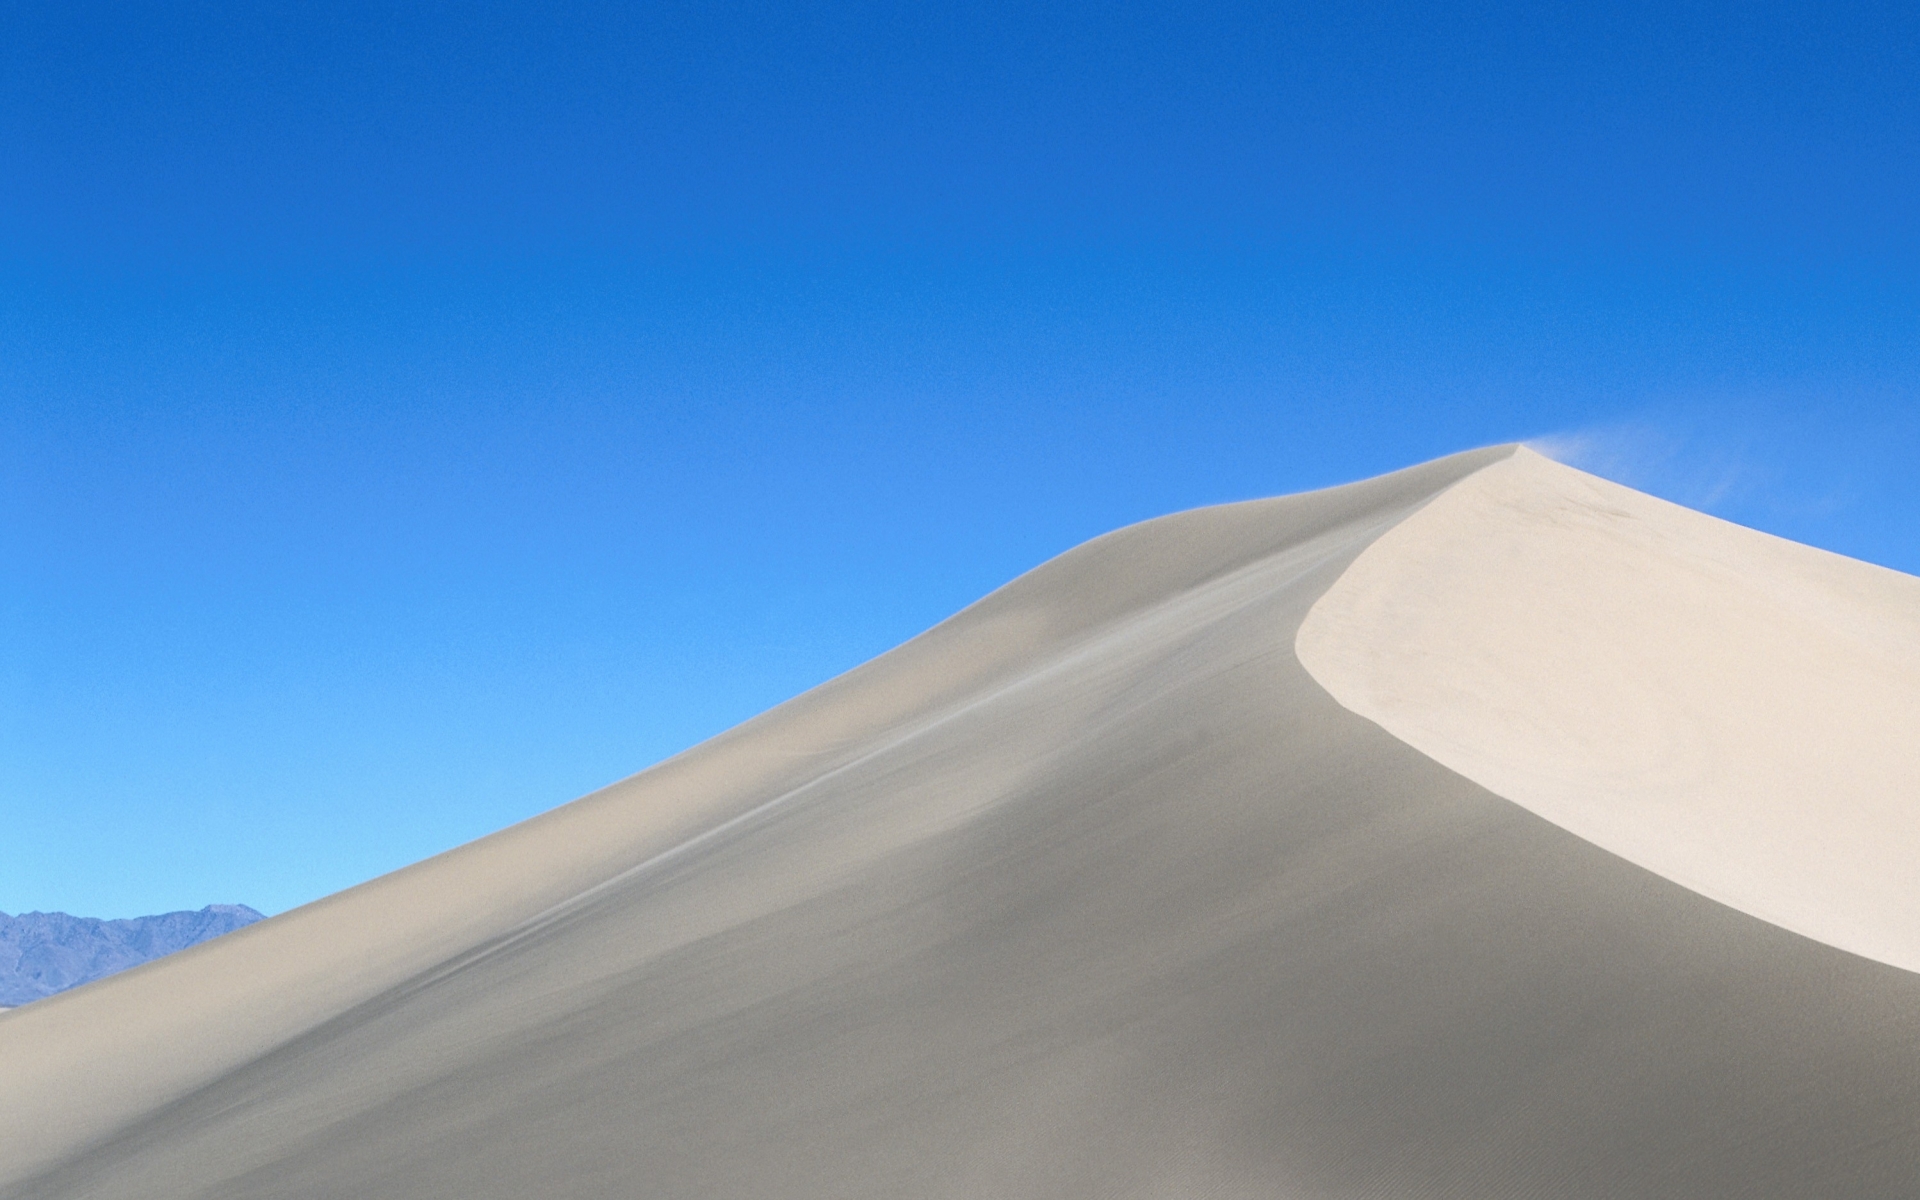 imágenes de fondo blanco,arena,azul,blanco,cielo,duna